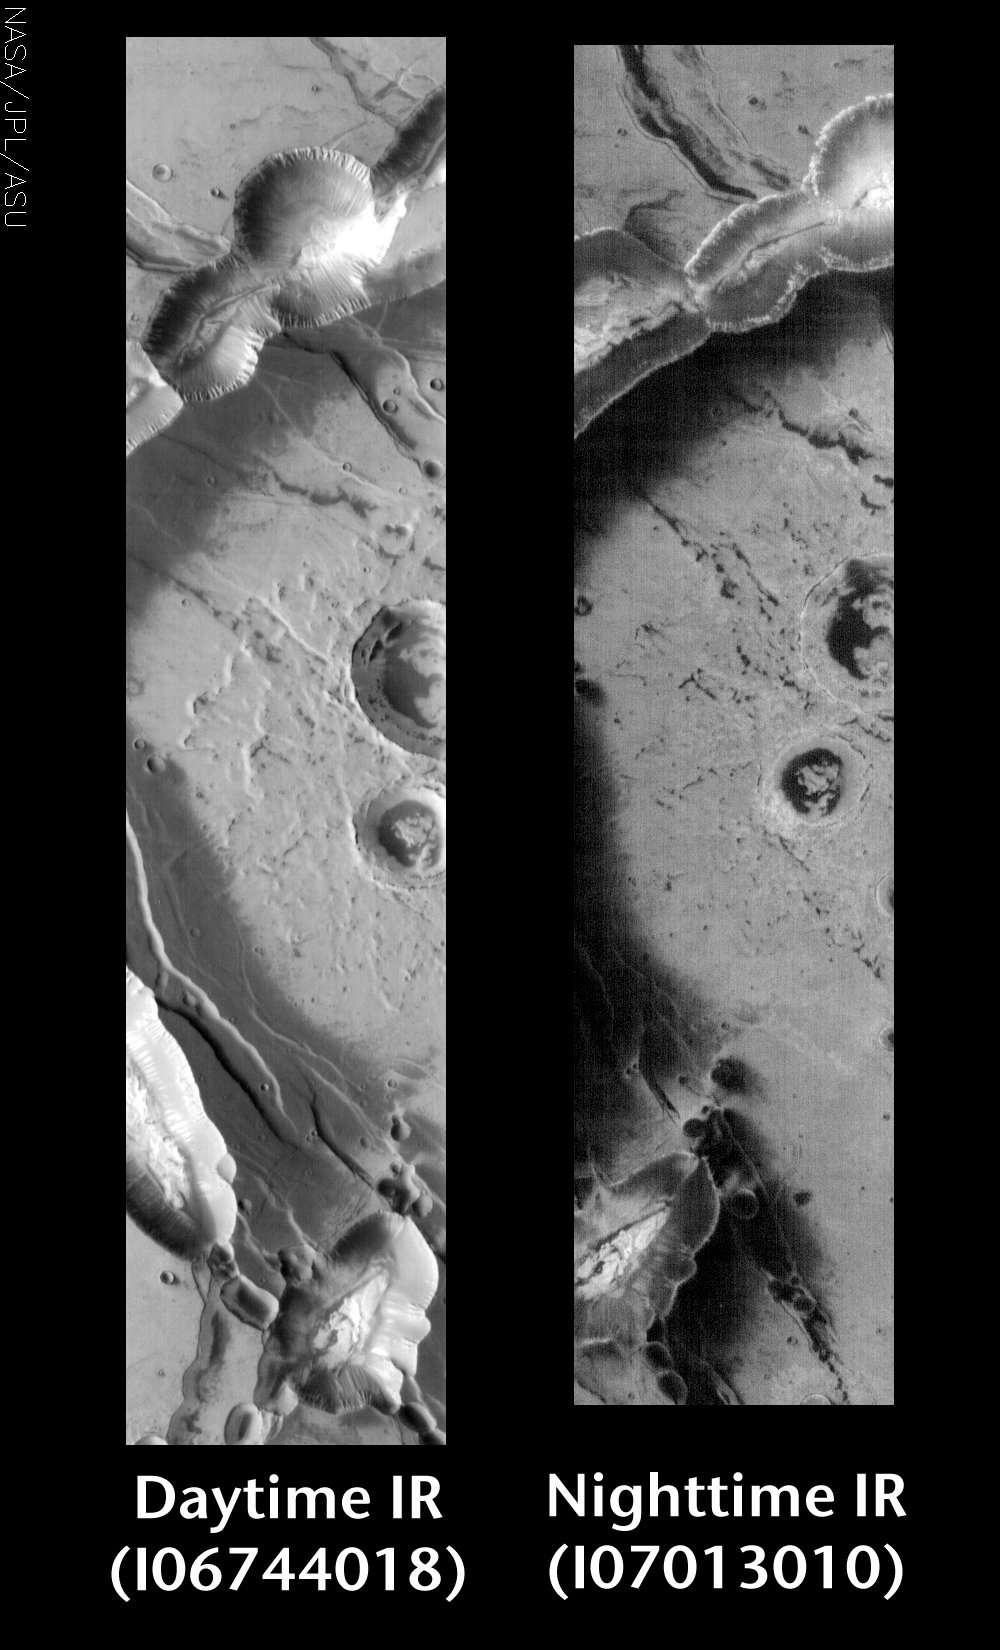 Mars : Noctus Labyrinthus